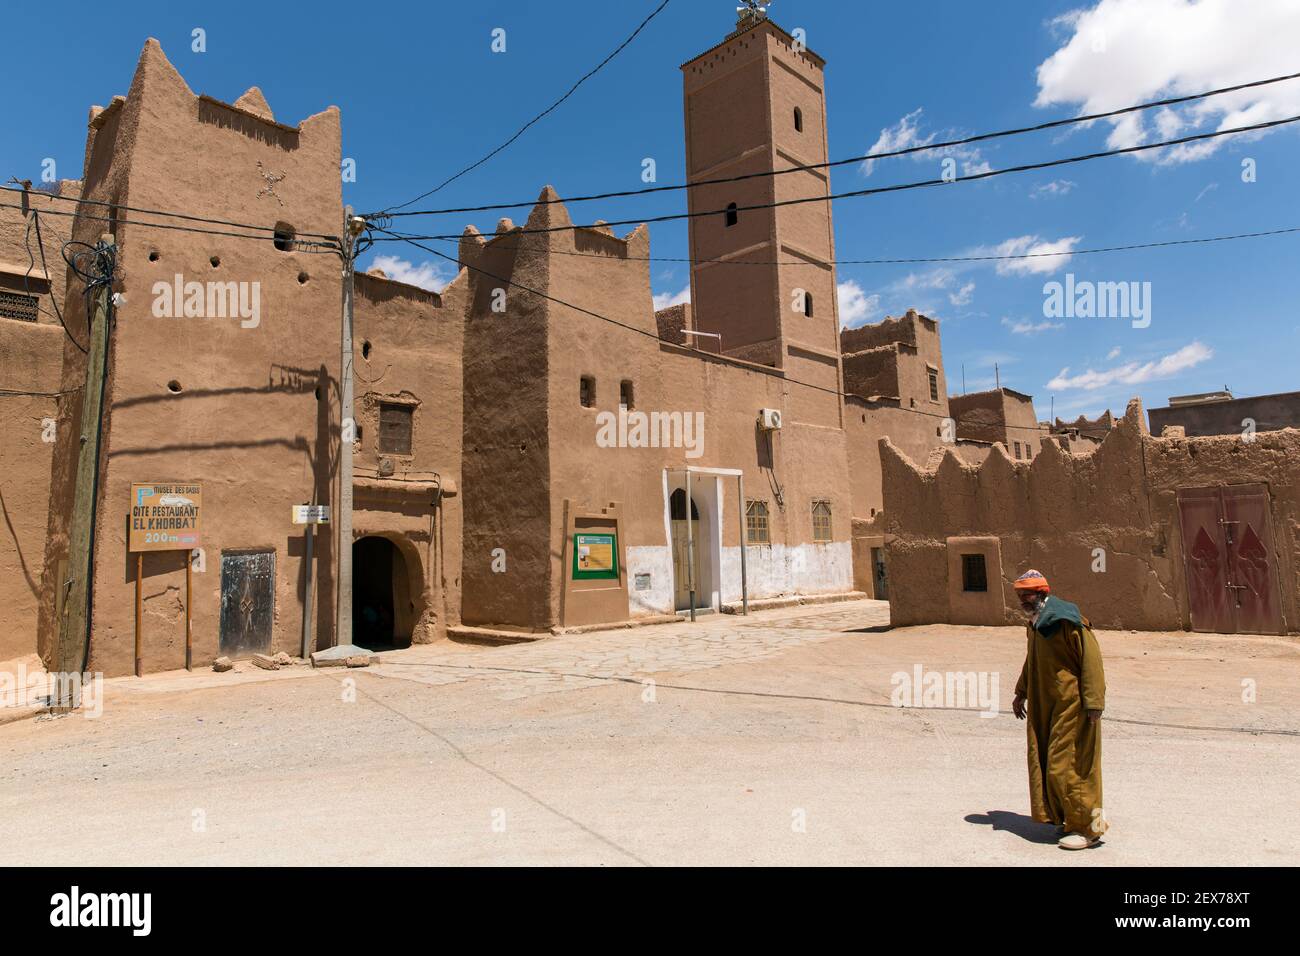 Maroc, Tinejdad, vallée de Todra, Ksar El Khorbat, est un village de murs fortifiés en terre, avec une ou plusieurs entrées monumentales Banque D'Images